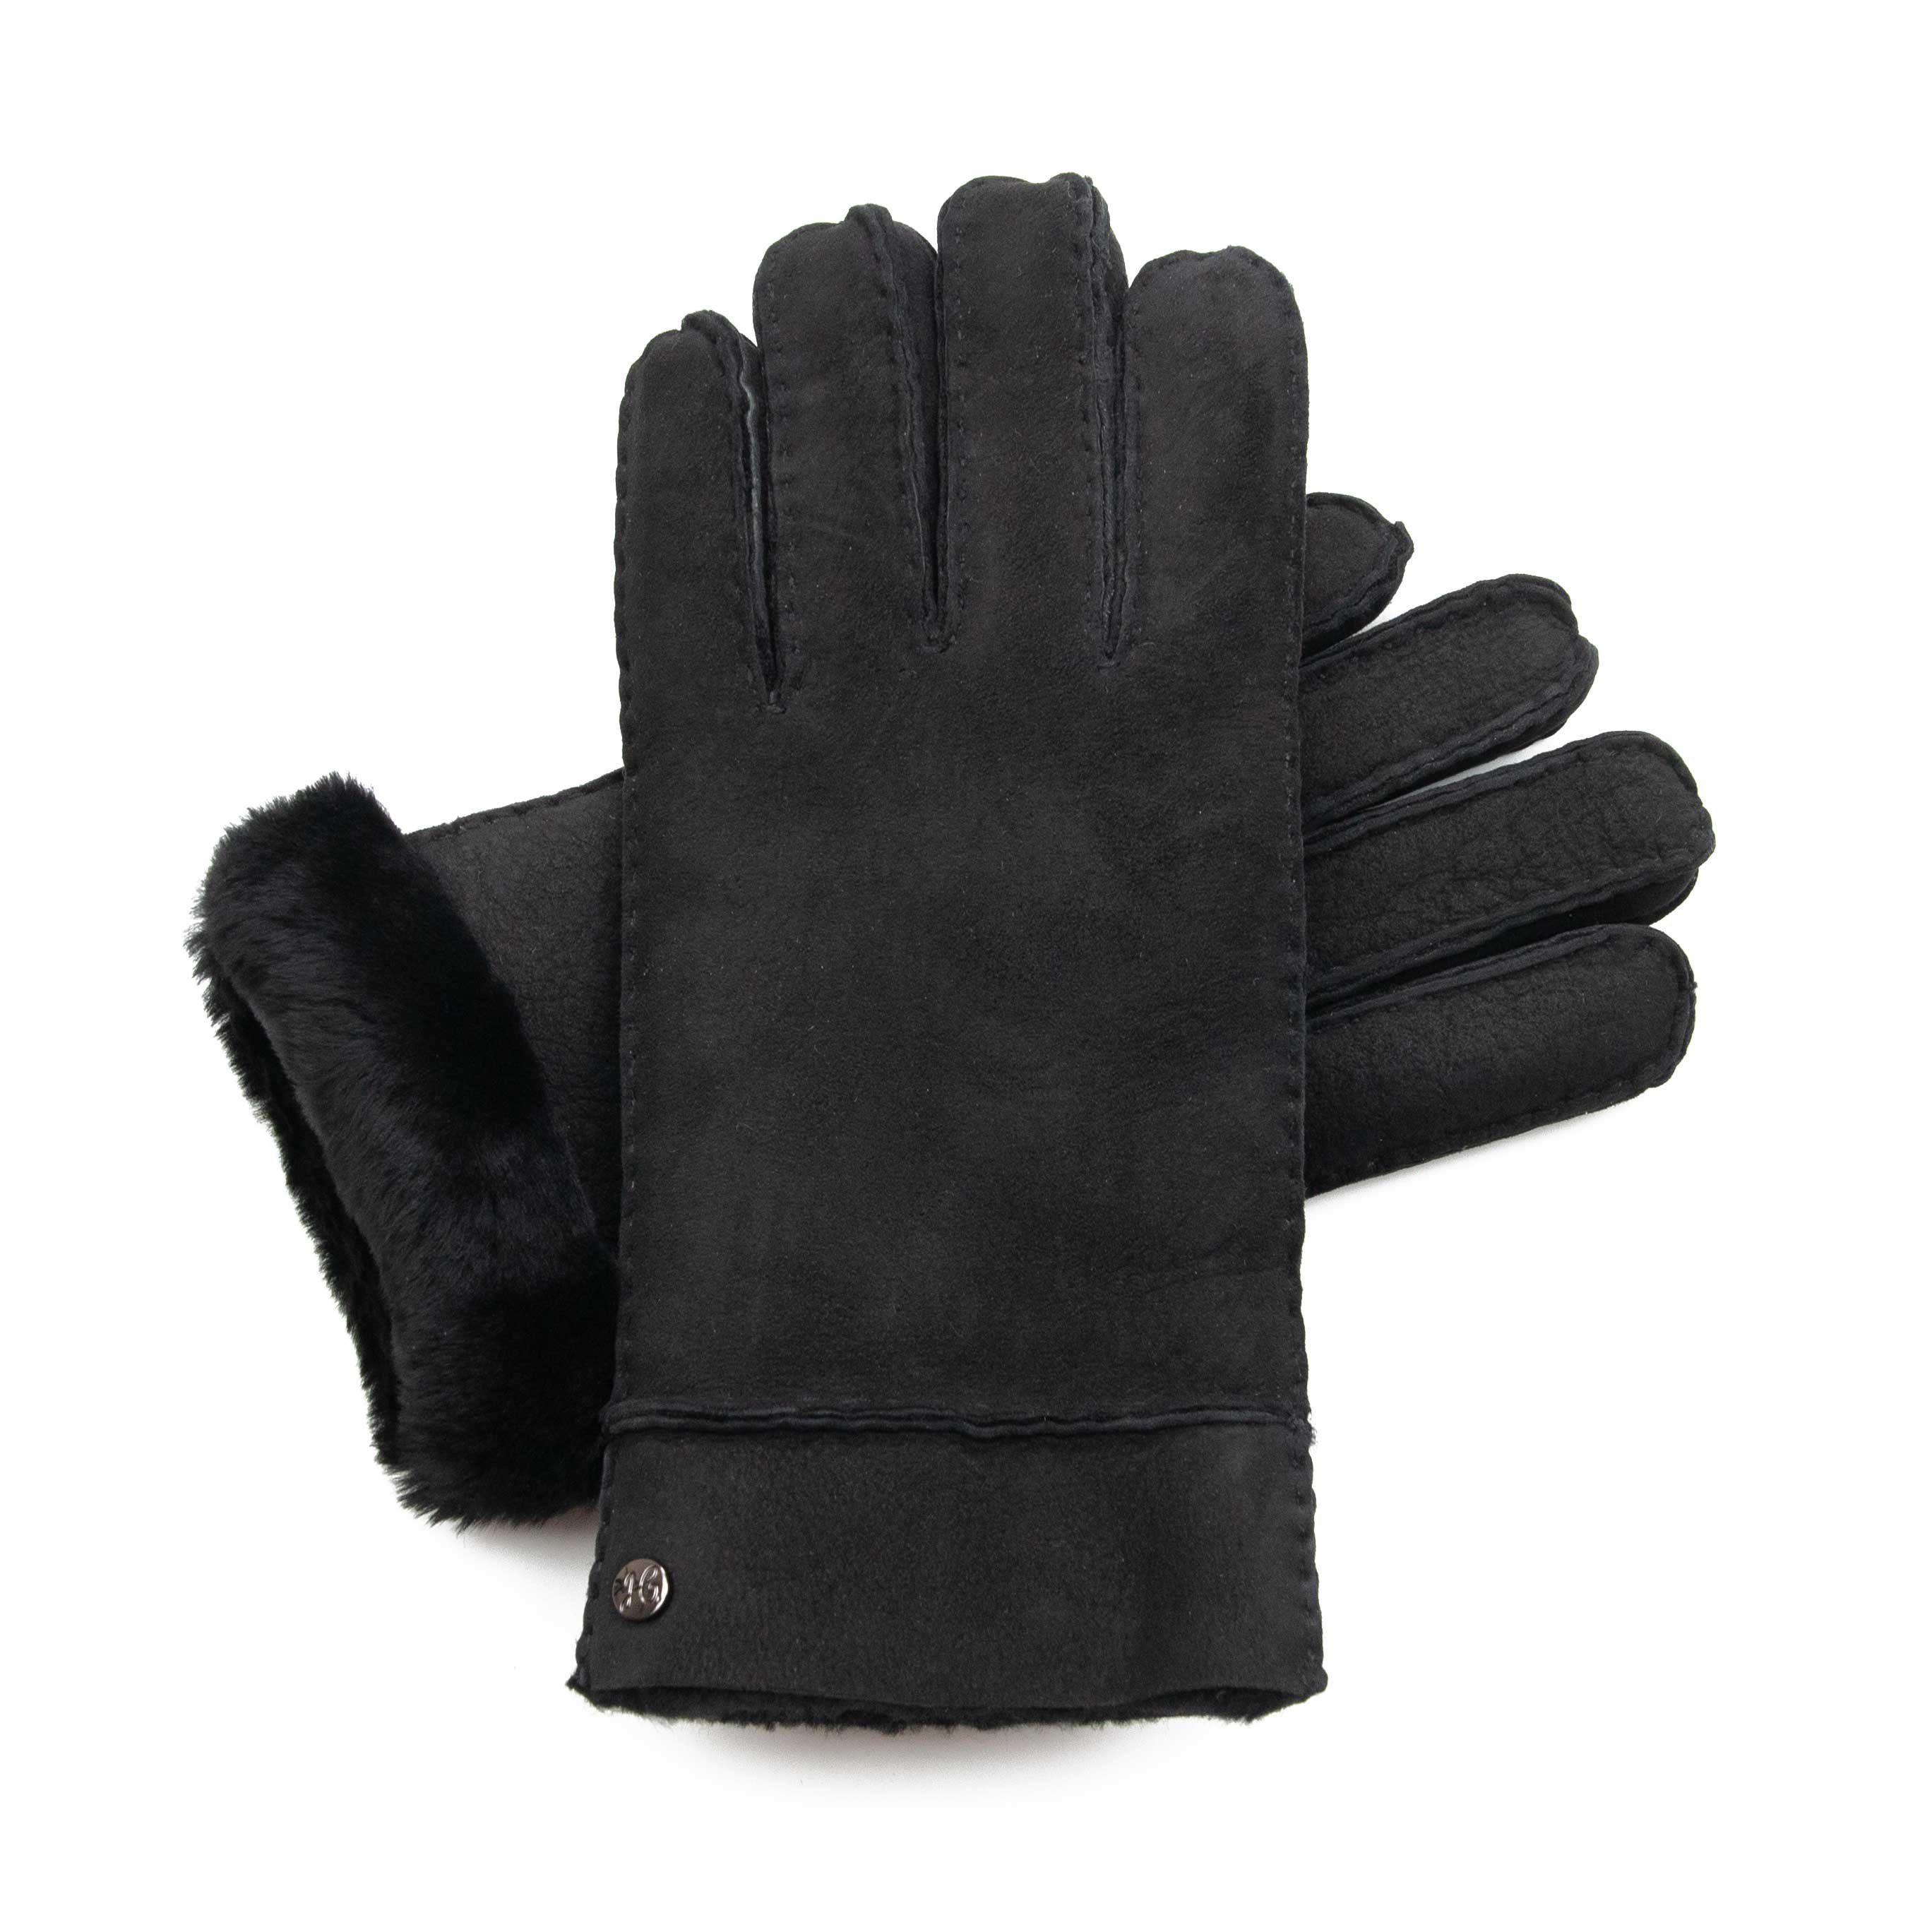 Lammfell-Handschuhe ADAM aus by spanischem Gewand - Merino-Lammfell Lederhandschuhe Schwarz Hand Weikert